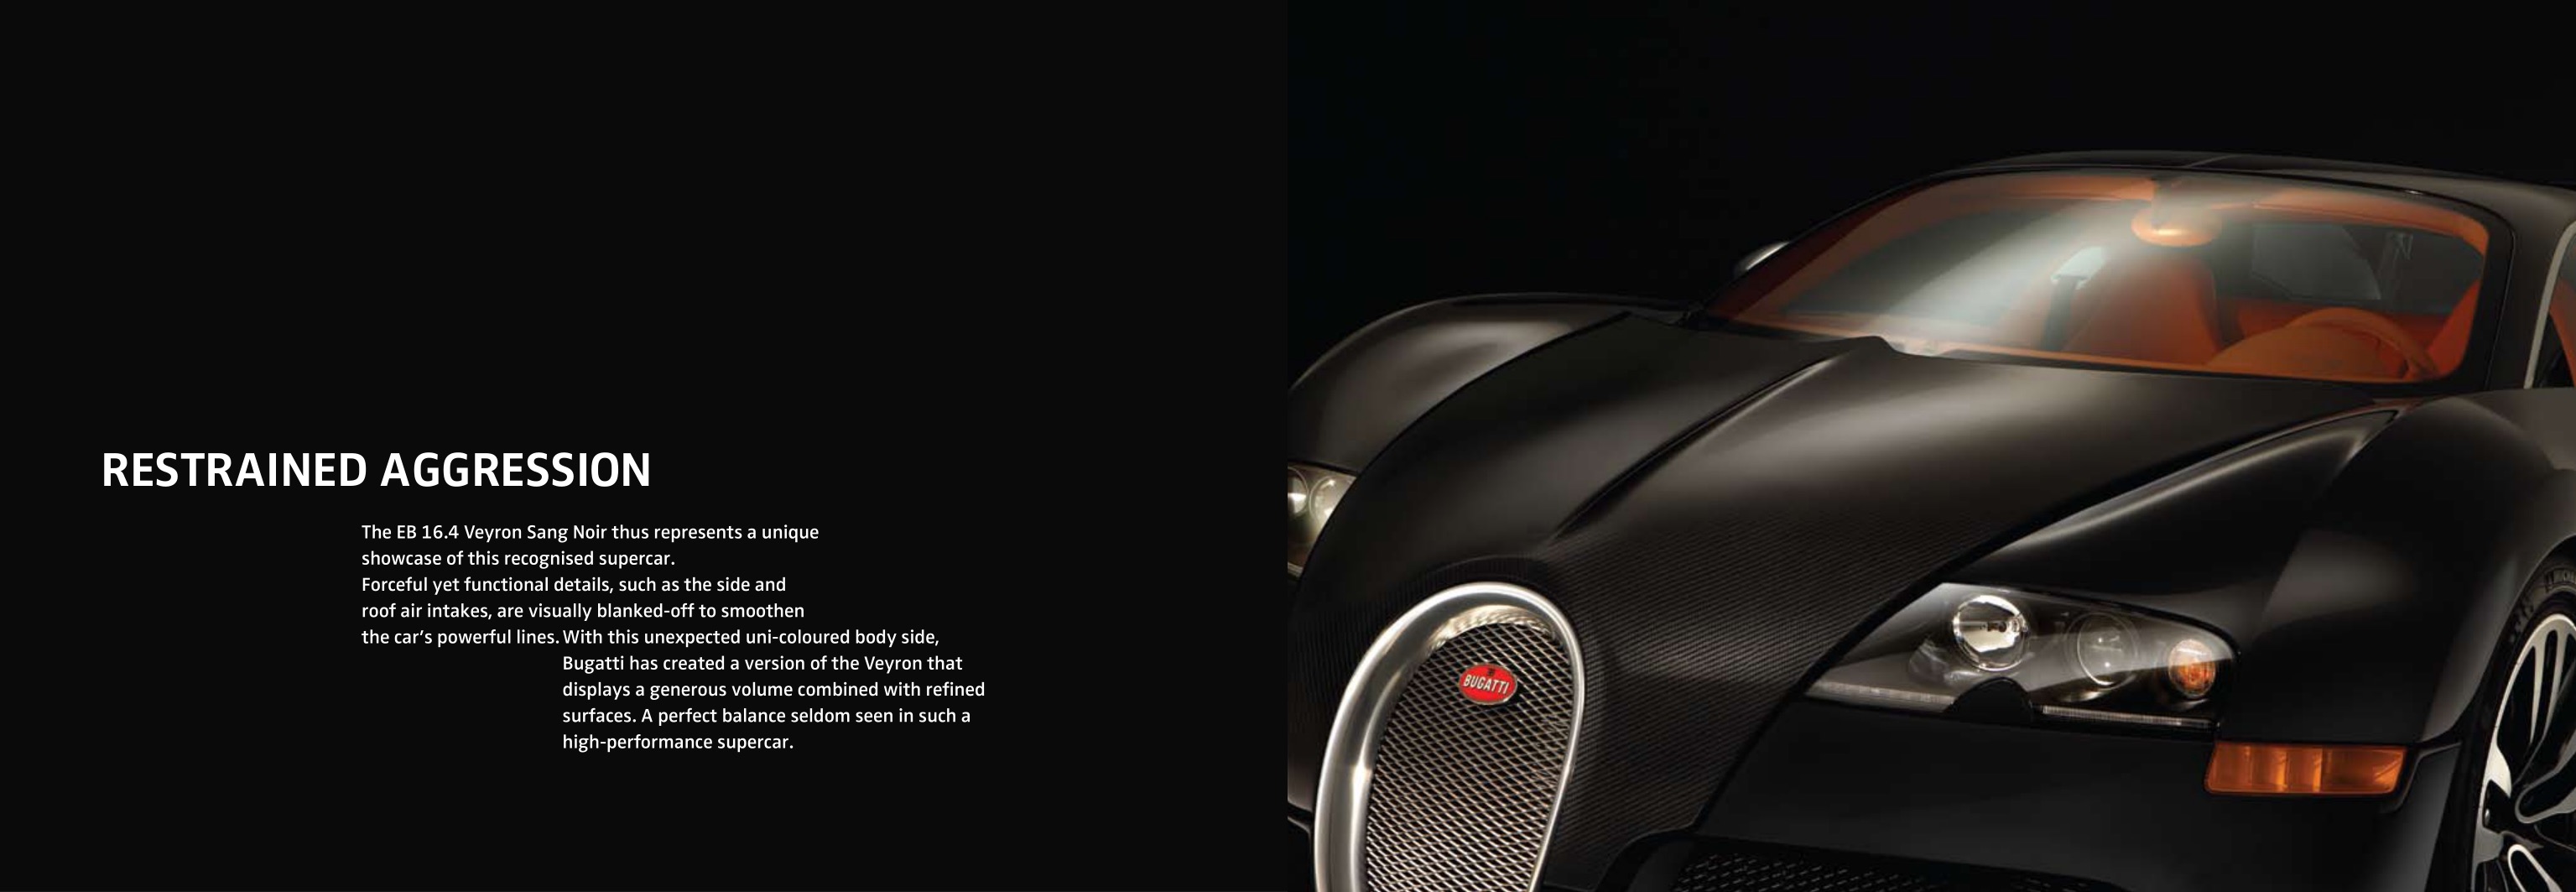 2008 Bugatti Veyron Sang Noir Brochure Page 8